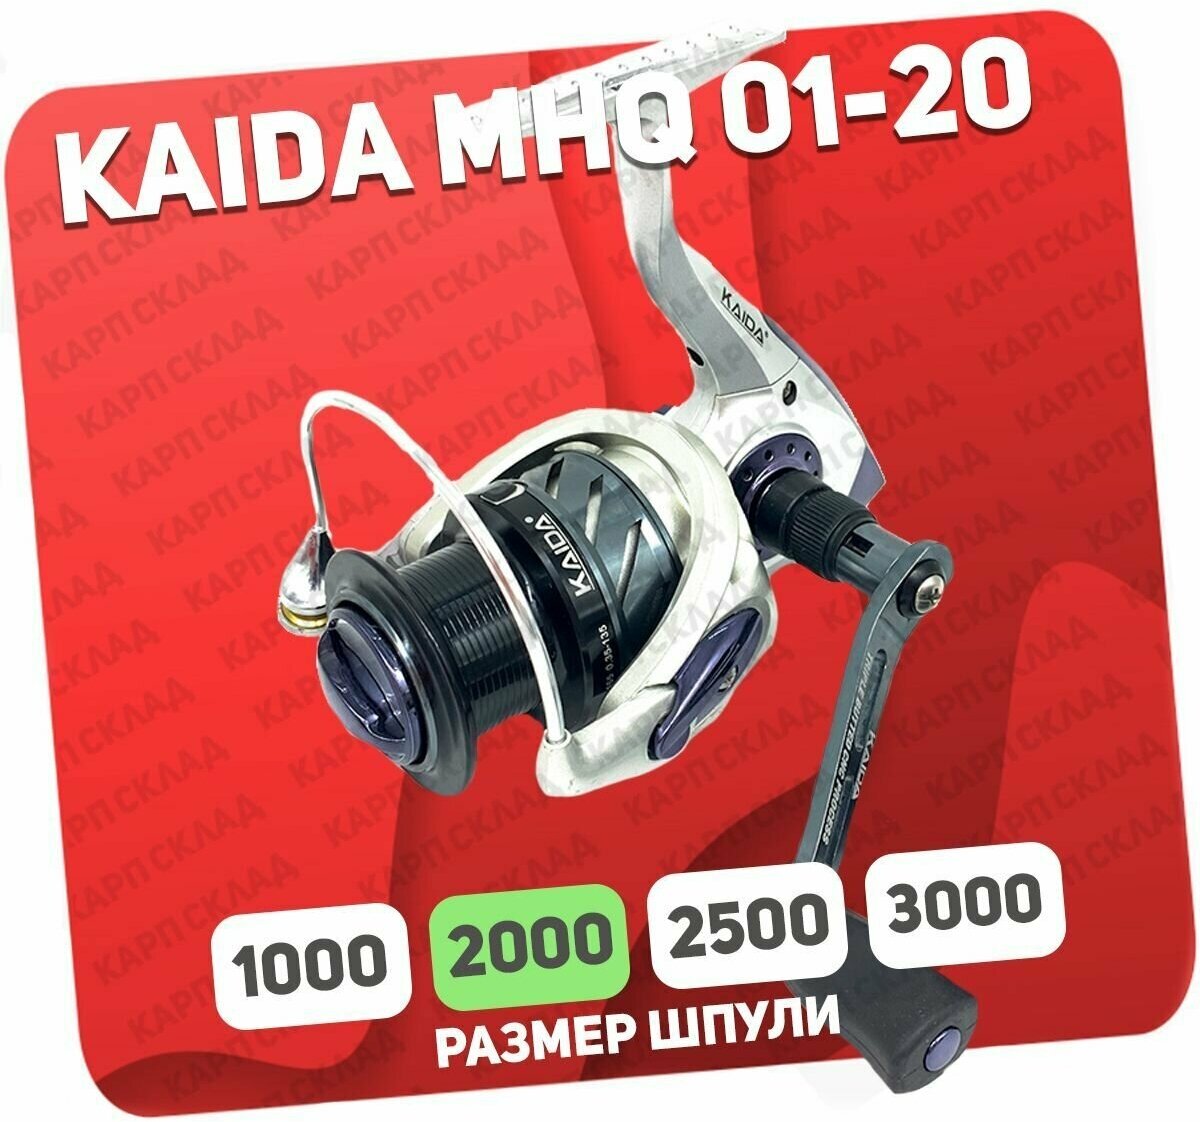 Катушка рыболовная Kaida MHQ-01-20-5BB безынерционная